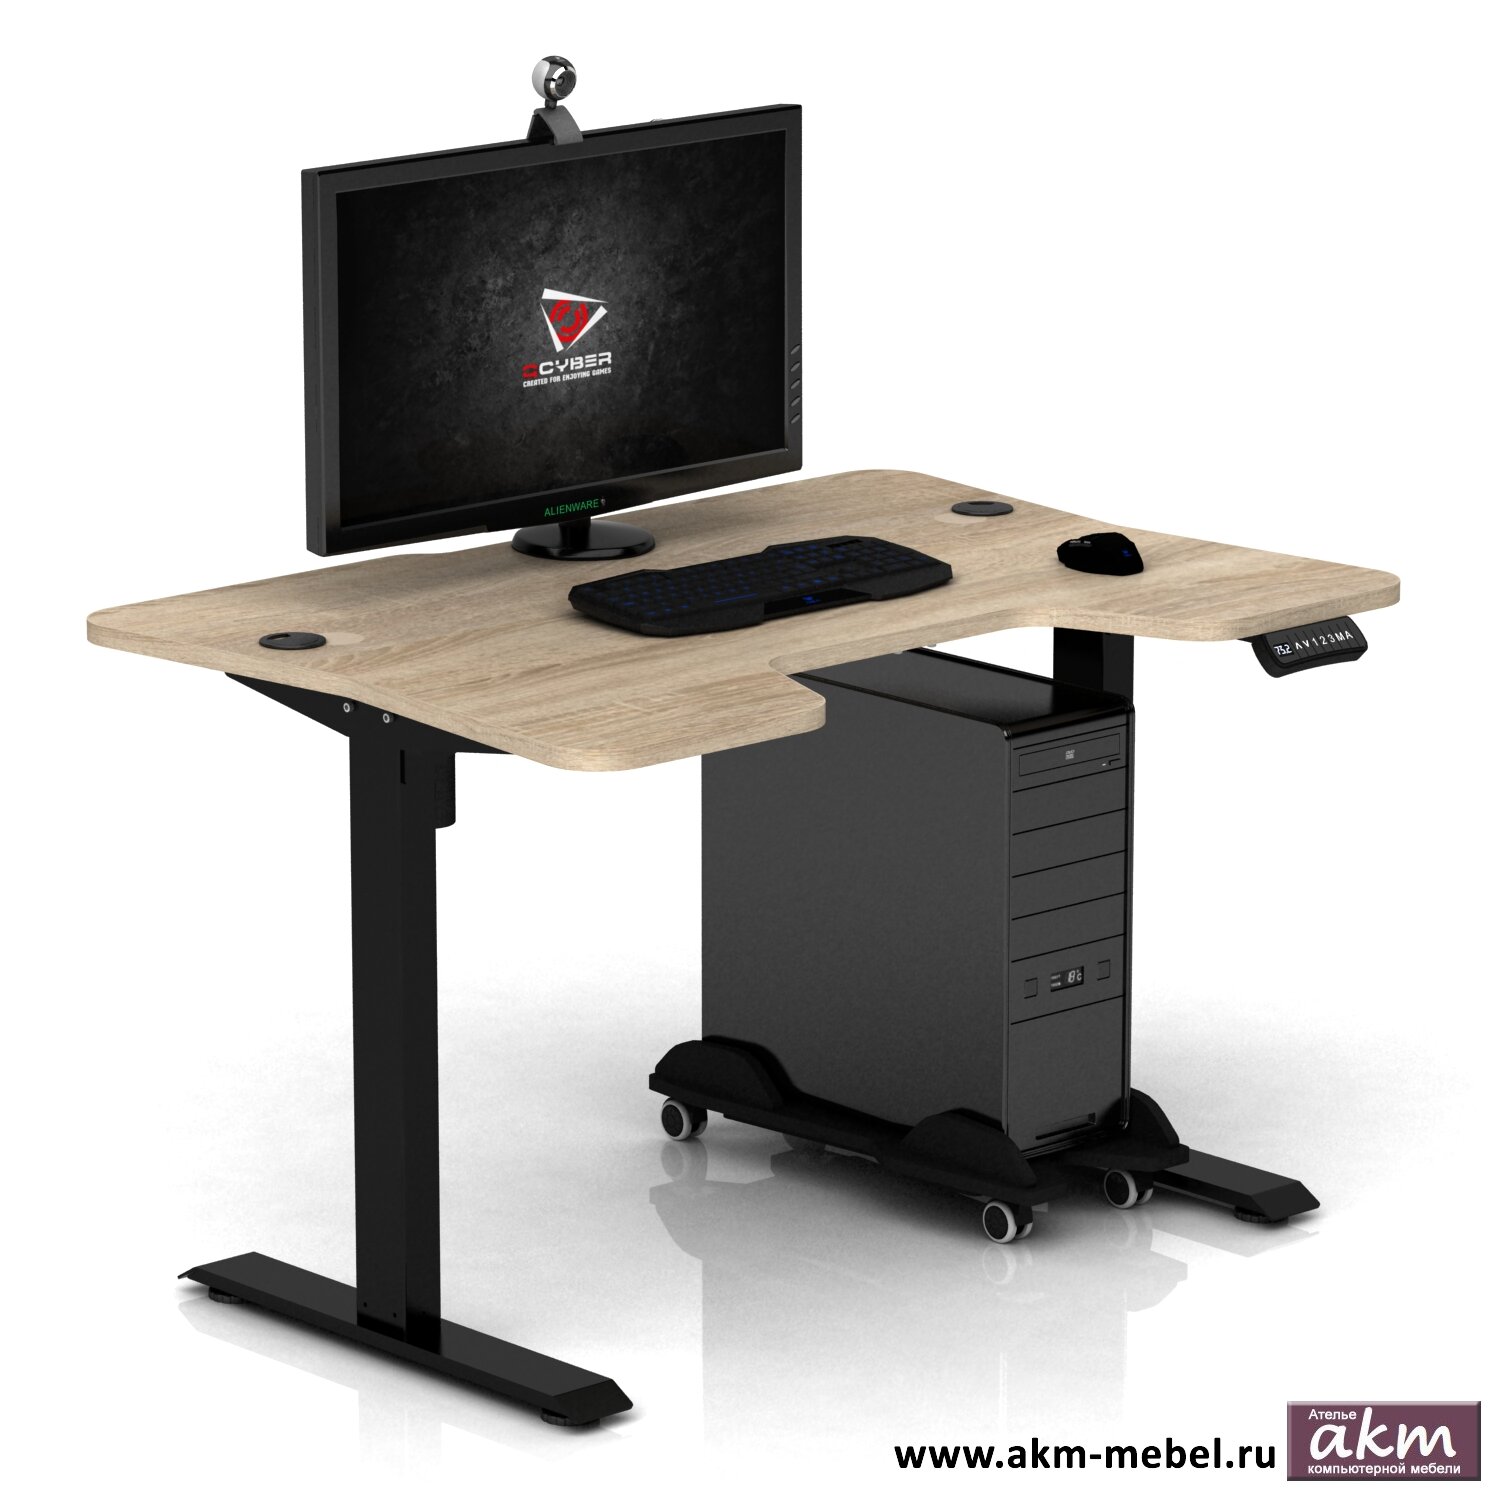 Геймерские игровые столы и кресла Регулируемый по высоте компьютерный стол с электроприводом DX ELECTRIC COMFORT Сонома